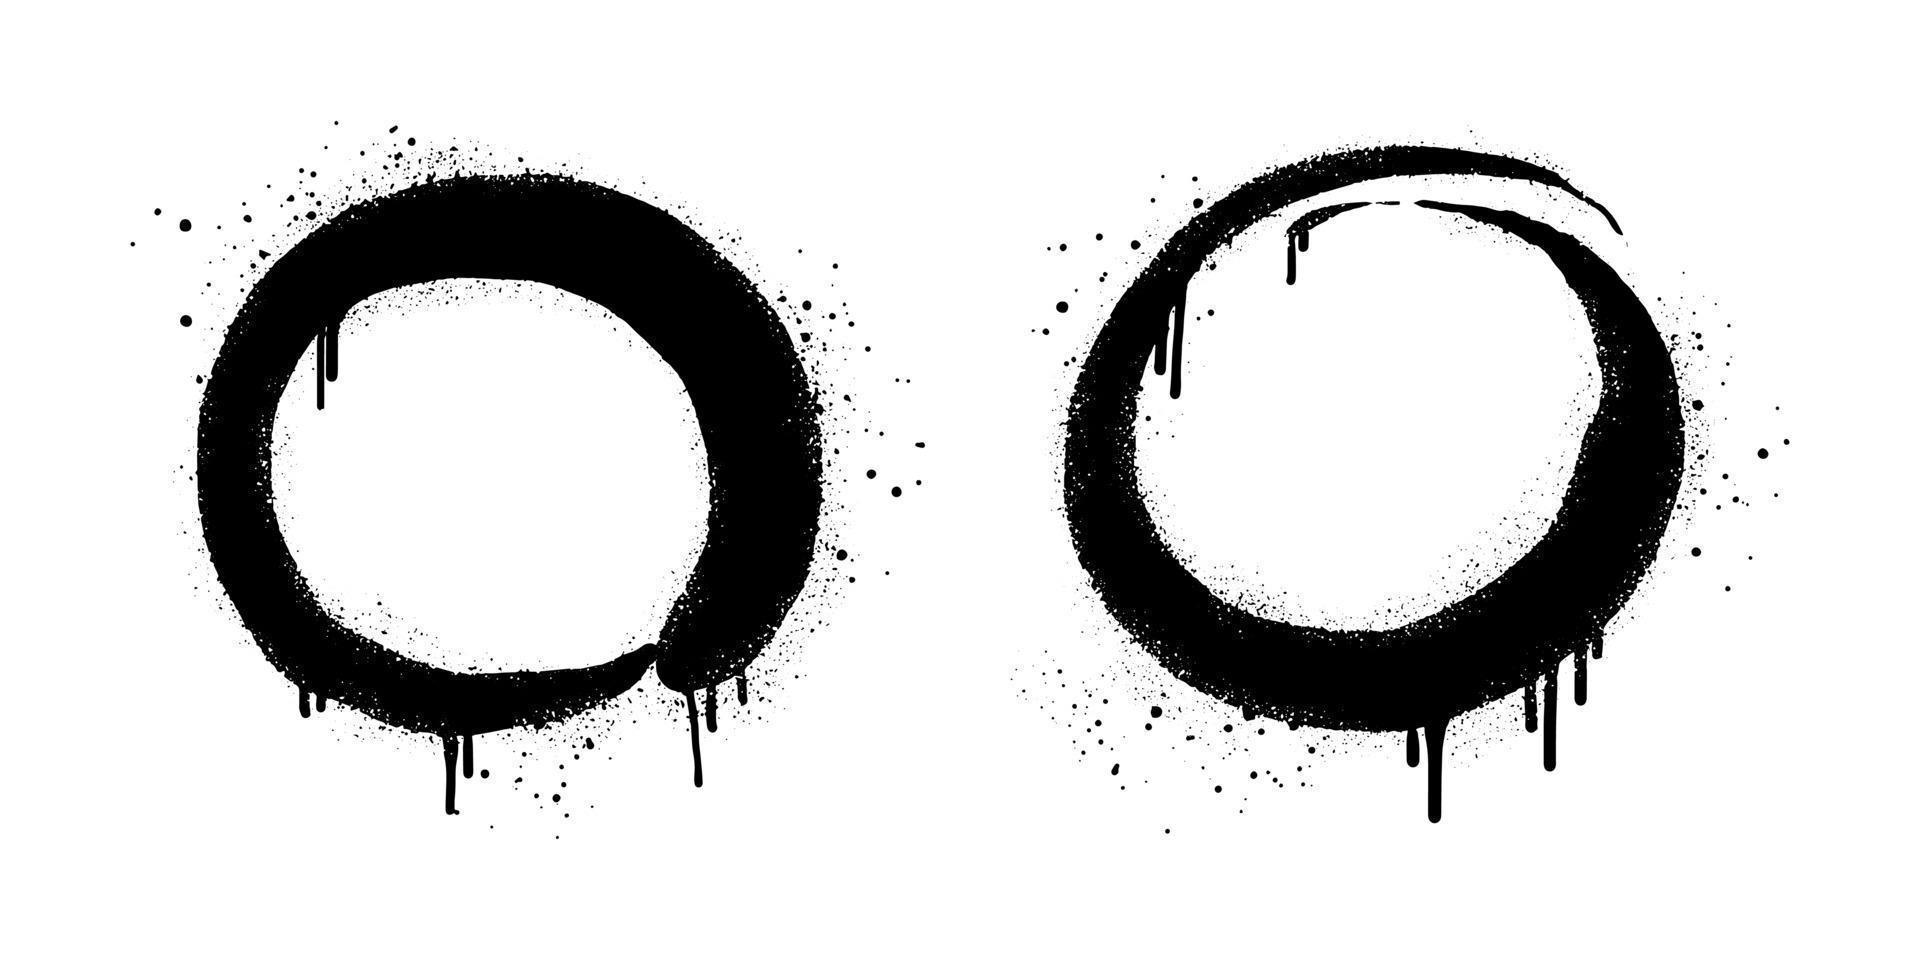 samling av spray målad graffiti cirkel tecken i svart över vit. design element droppa symbol. isolerat på vit bakgrund. vektor illustration